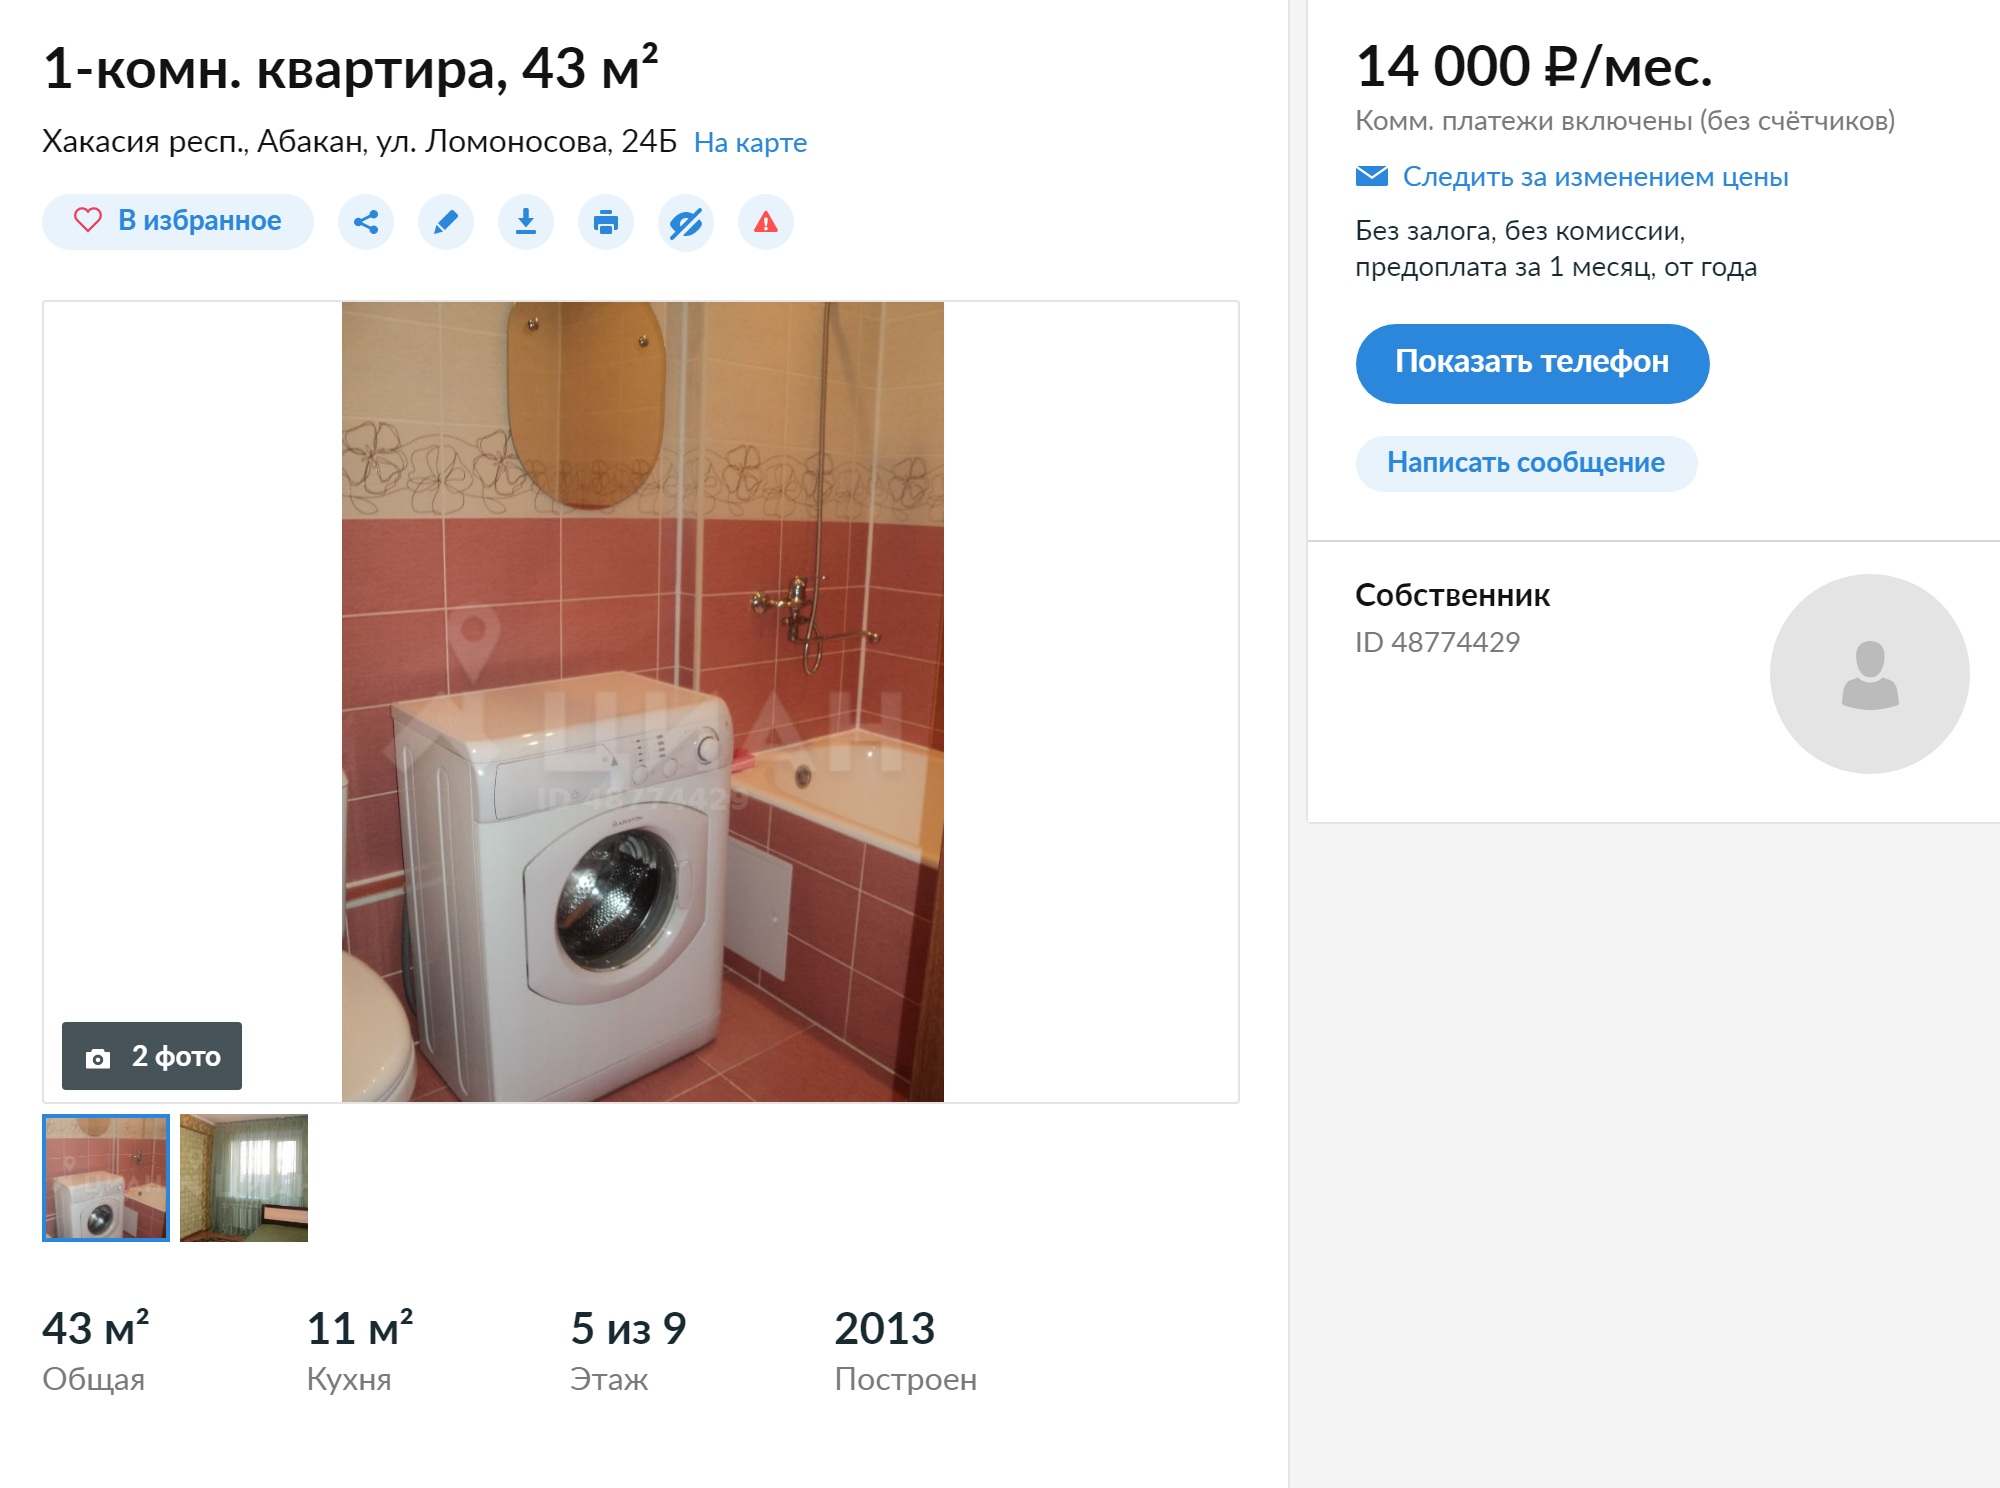 Аренда однокомнатной квартиры с мебелью и бытовой техникой обойдется в 14 тысяч рублей. Источник: «Циан»